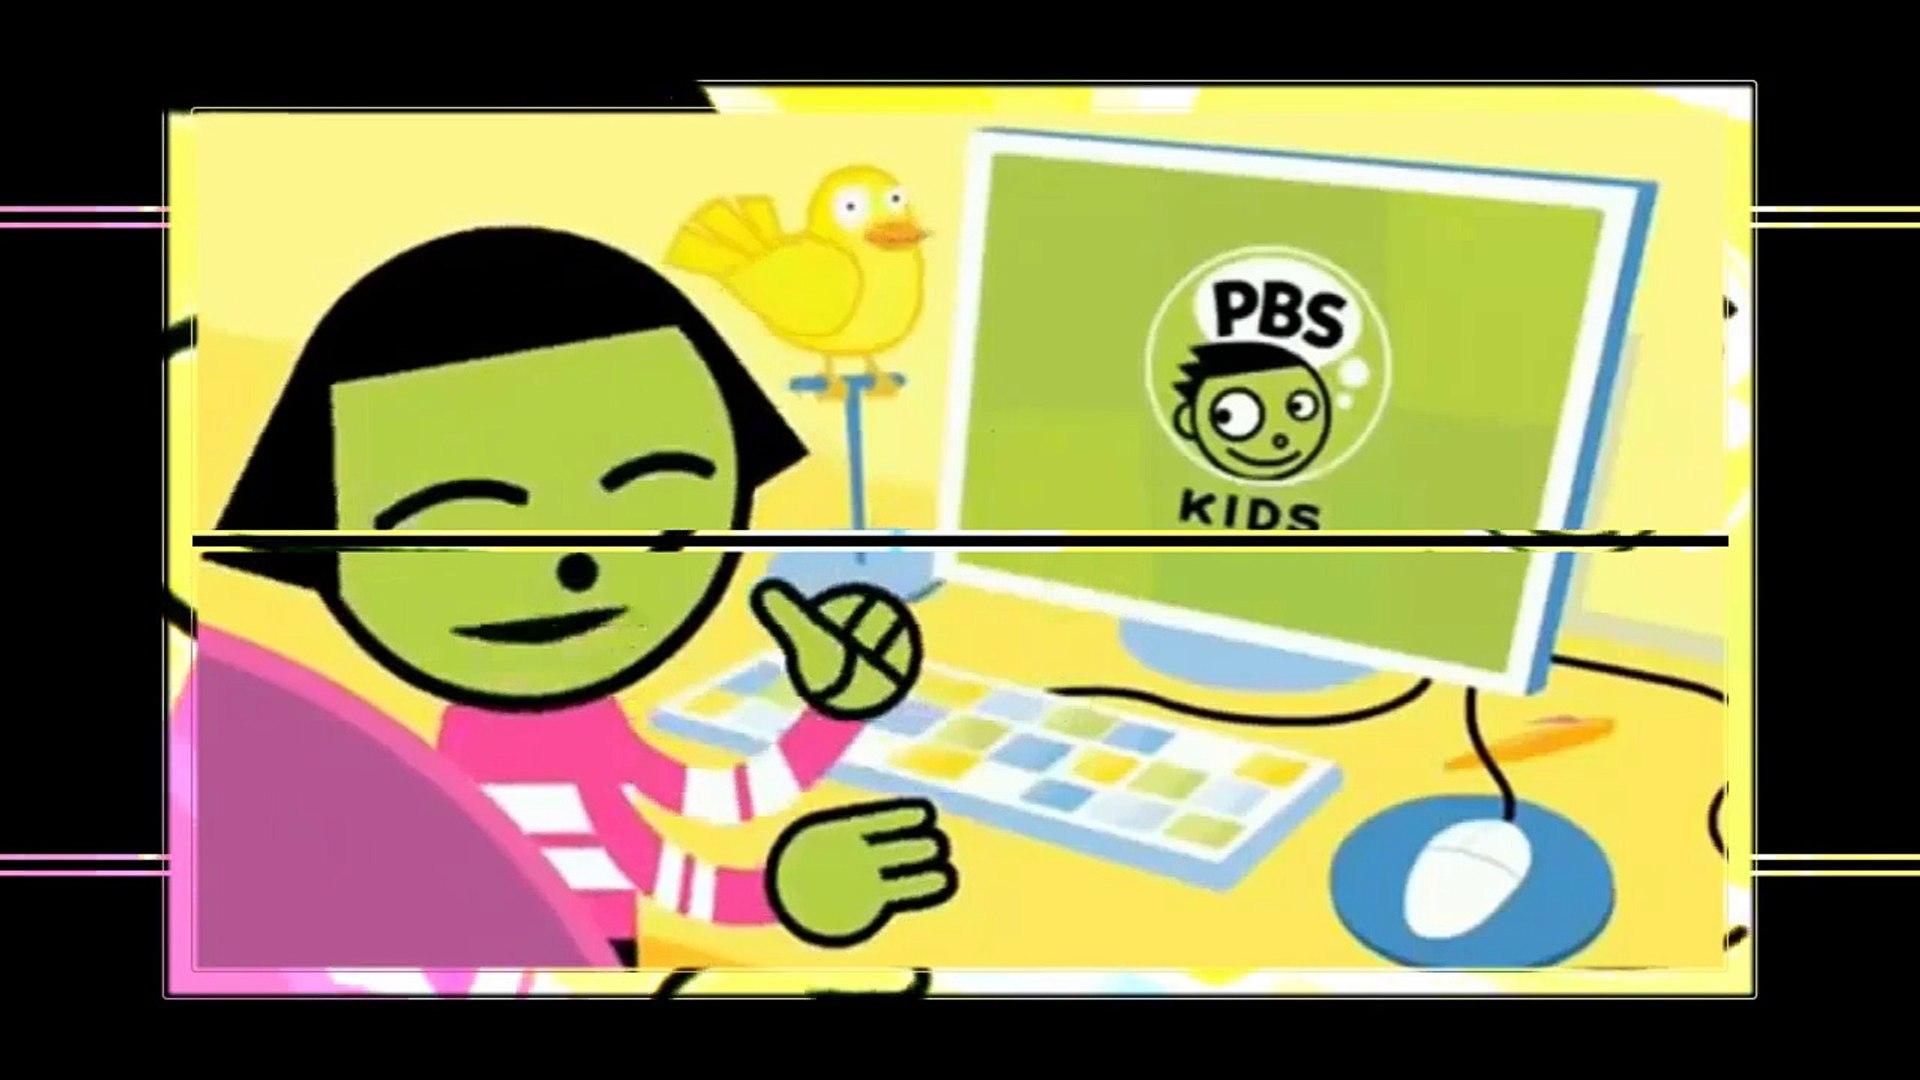 PBS KIDS Logo - PBS Kids Bumpers - Dash Dot logo Effects 2018 - video dailymotion